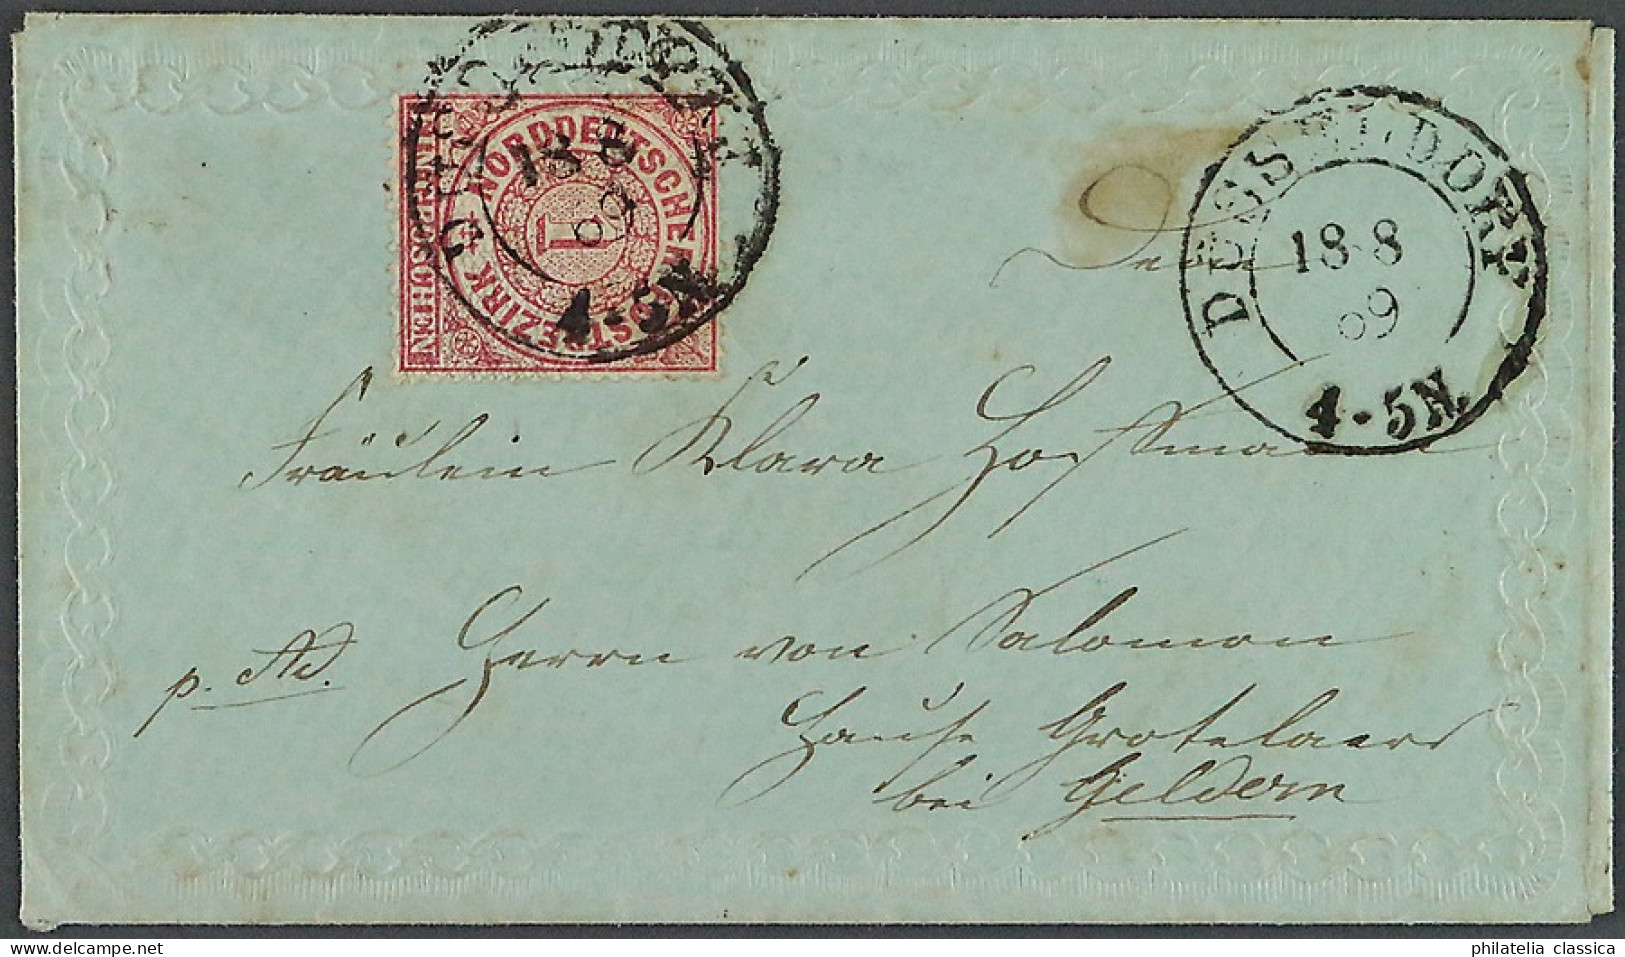 Norddt. Bund, 1869, Zartblaues Damenbriefchen Mit ZIERBORTEN, Liebhaberstück - Briefe U. Dokumente